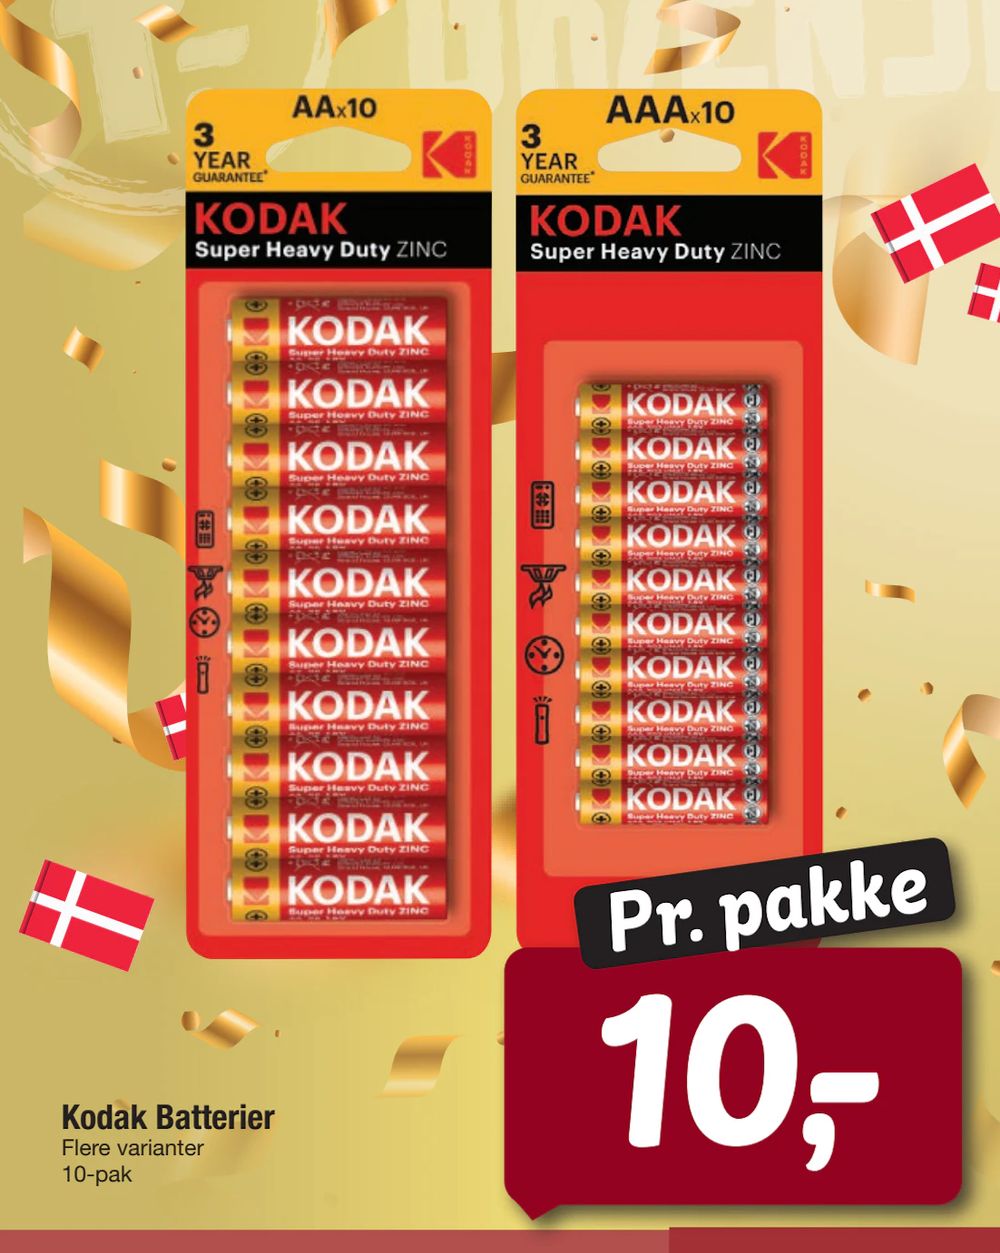 Tilbud på Kodak Batterier fra fakta Tyskland til 10 kr.